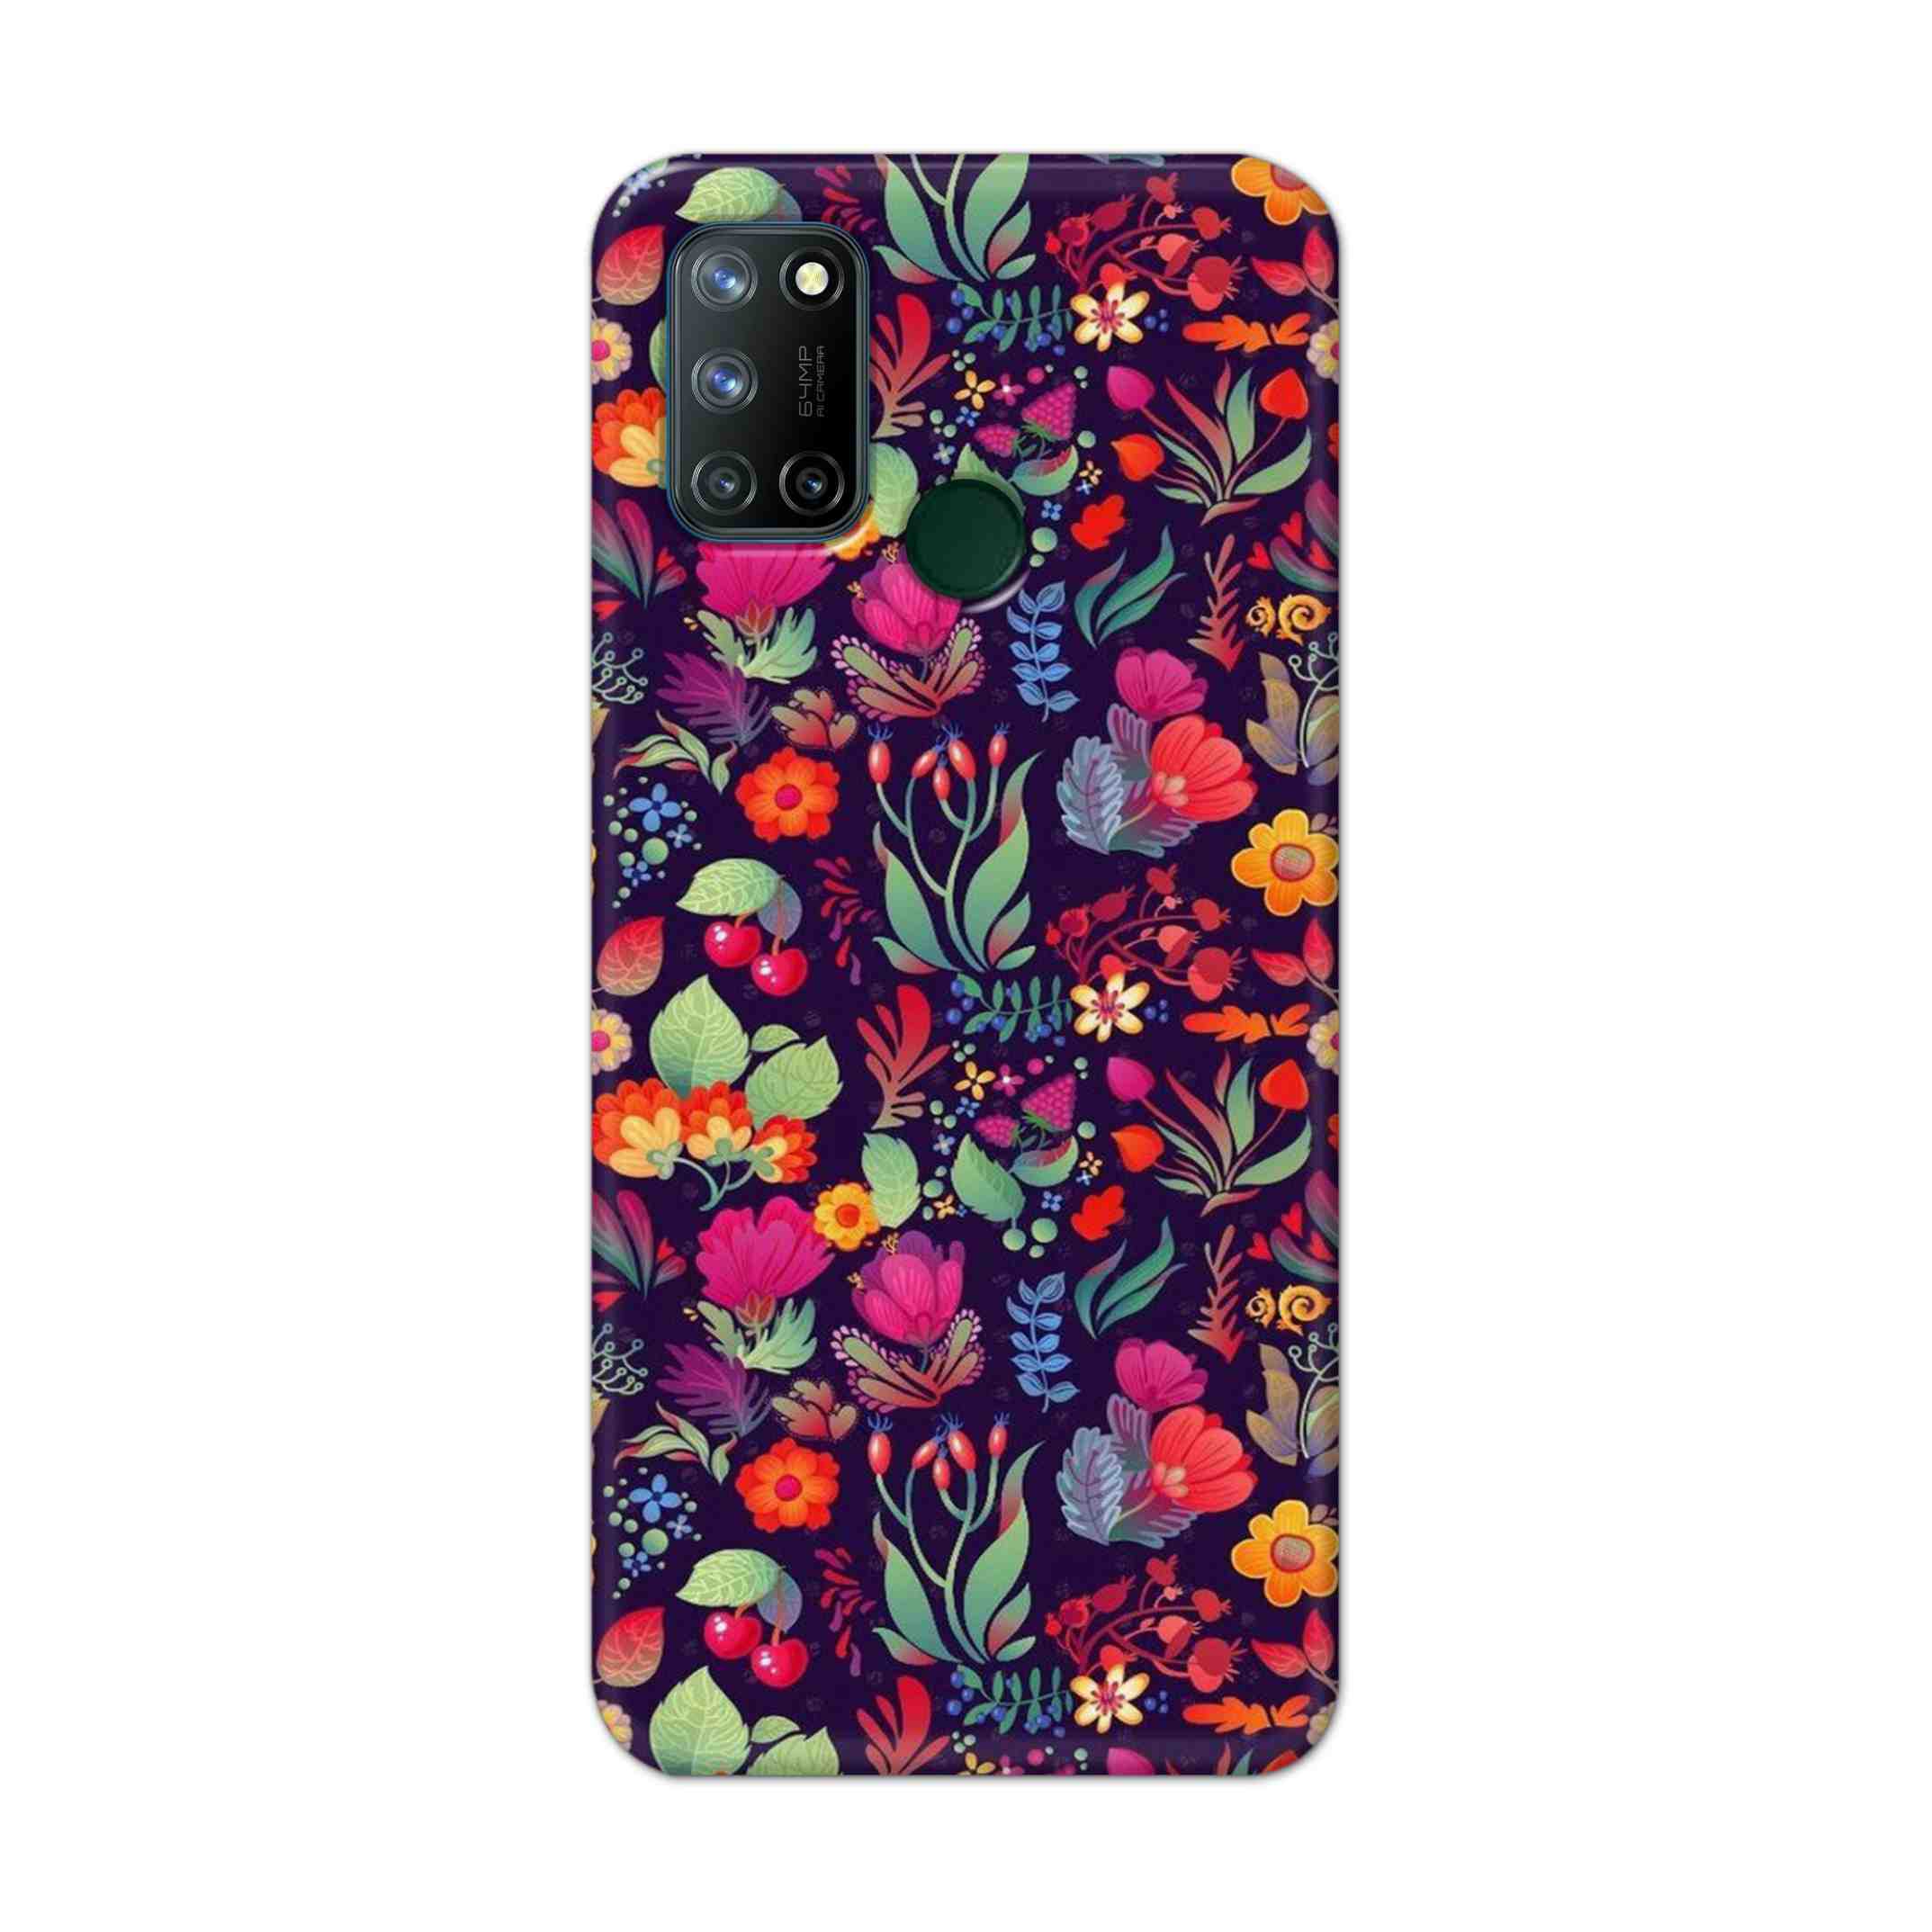 Buy Fruits Flower Hard Back Mobile Phone Case Cover For Realme 7i Online